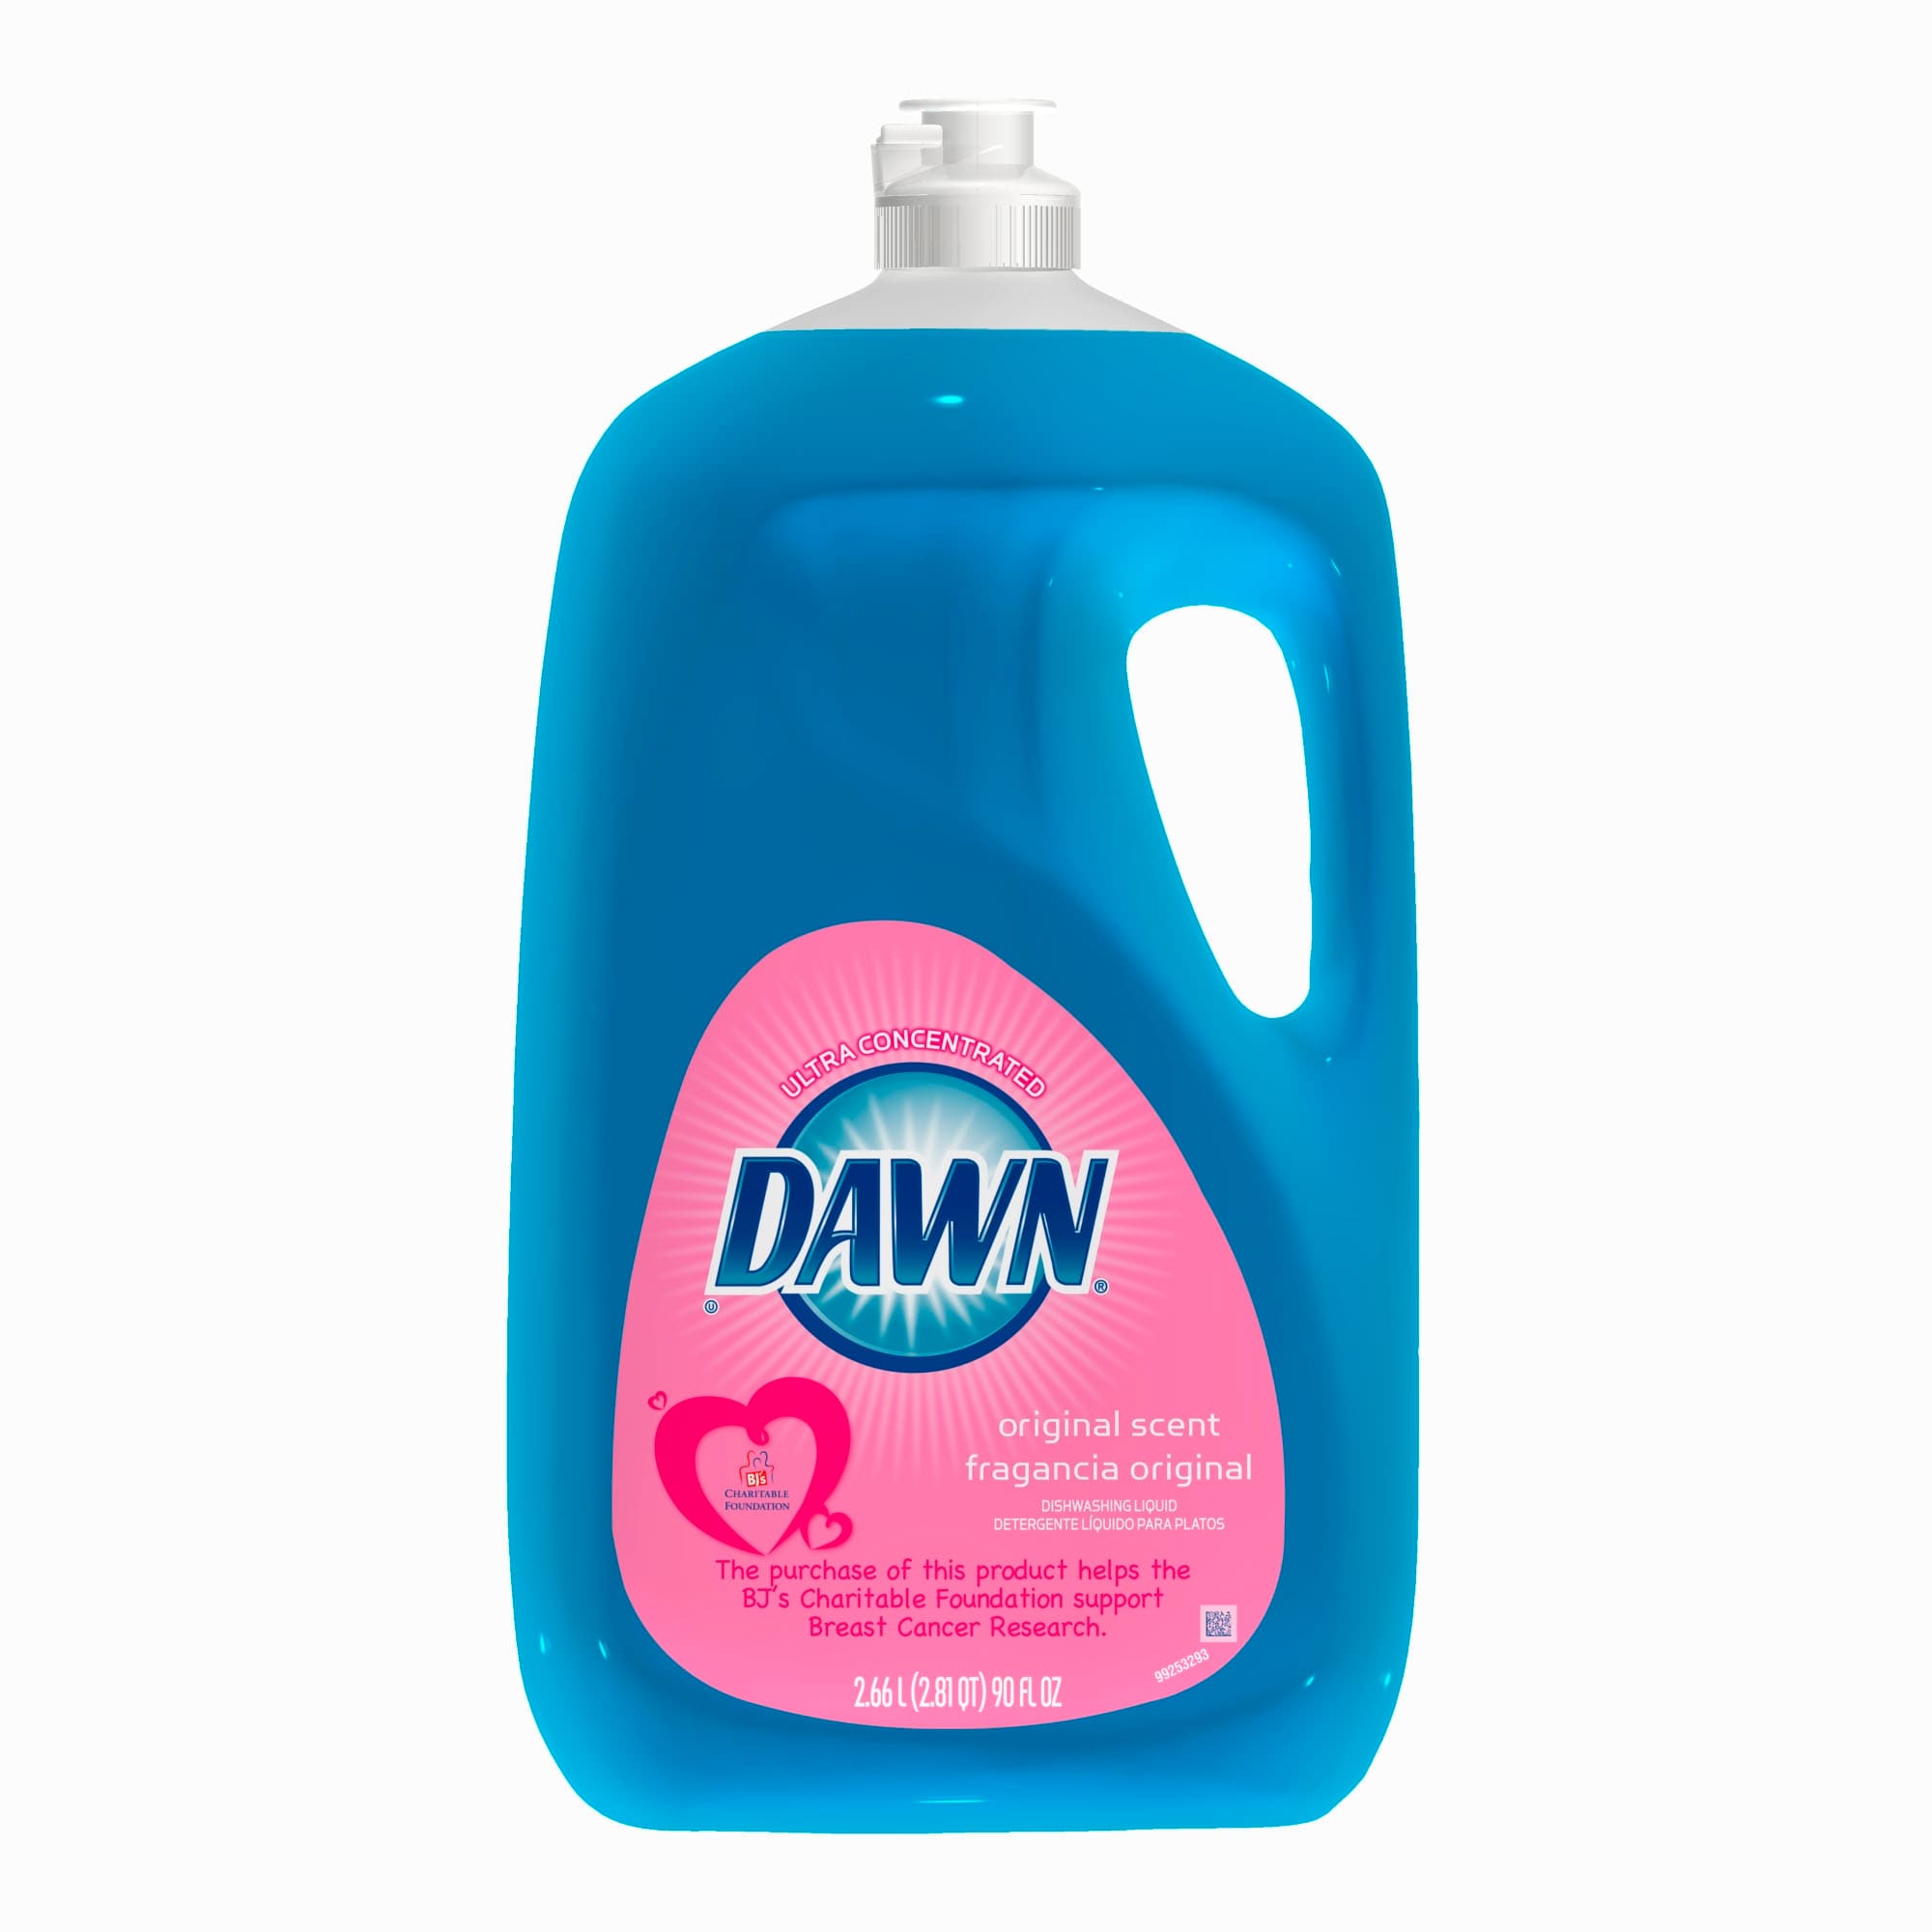 Dawn Ultra Platinum 24-oz Refreshing Rain Dish Soap